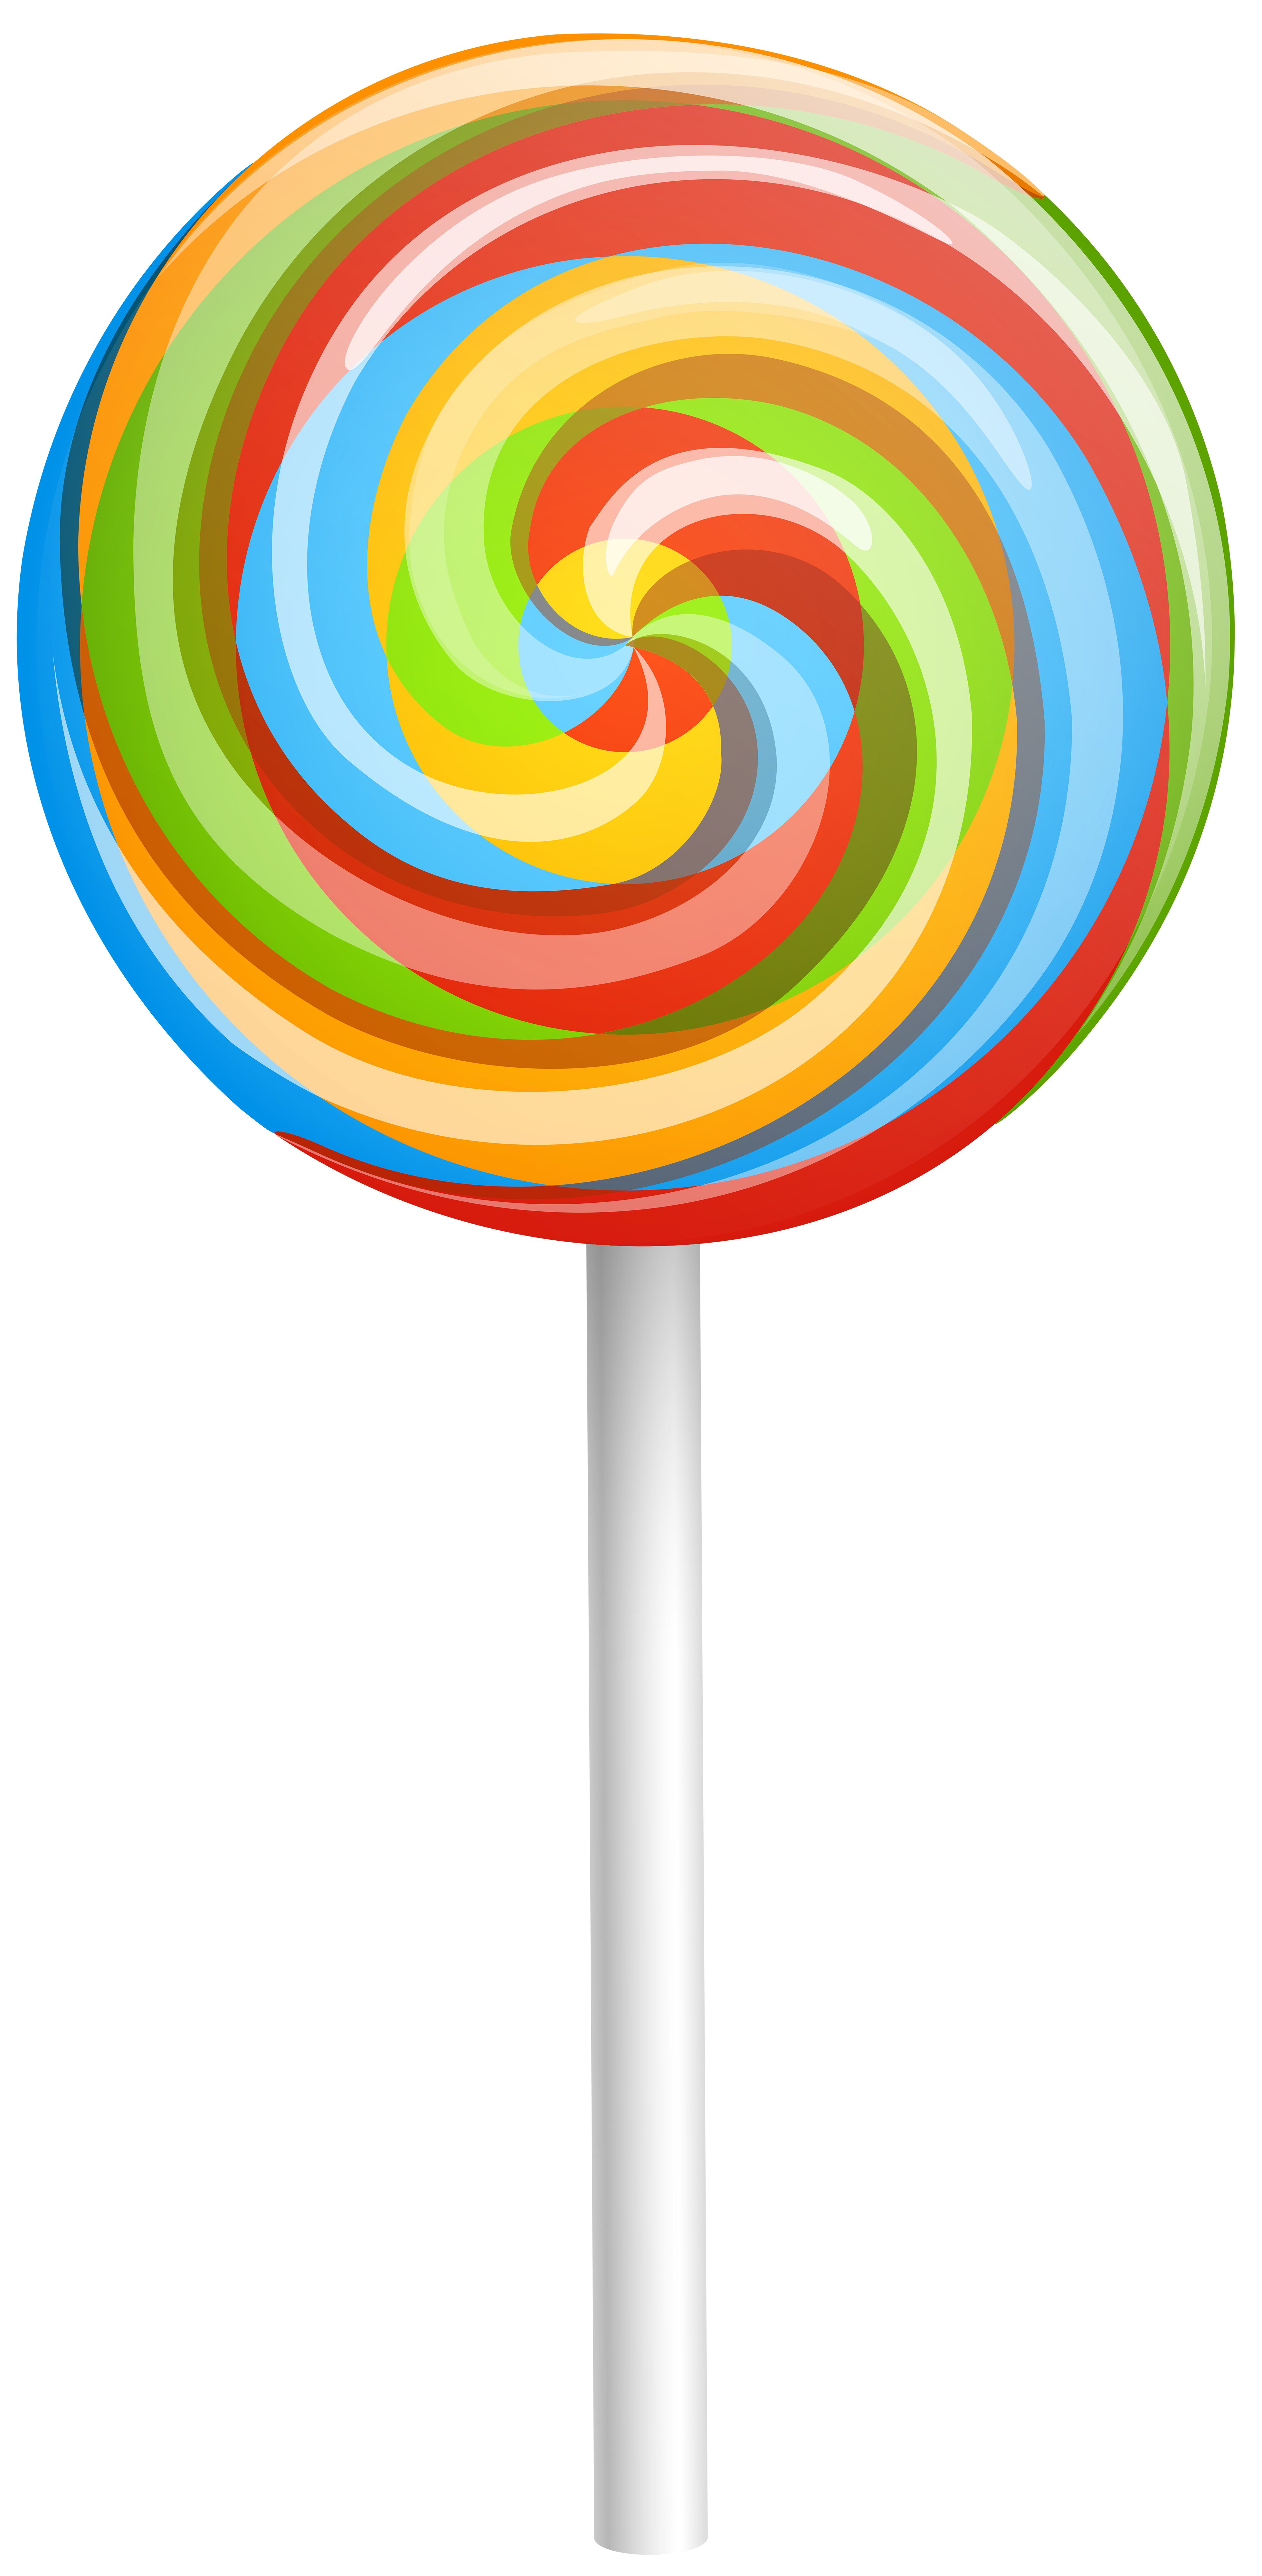 Lollipop clip art images free clipart images image - Clipartix